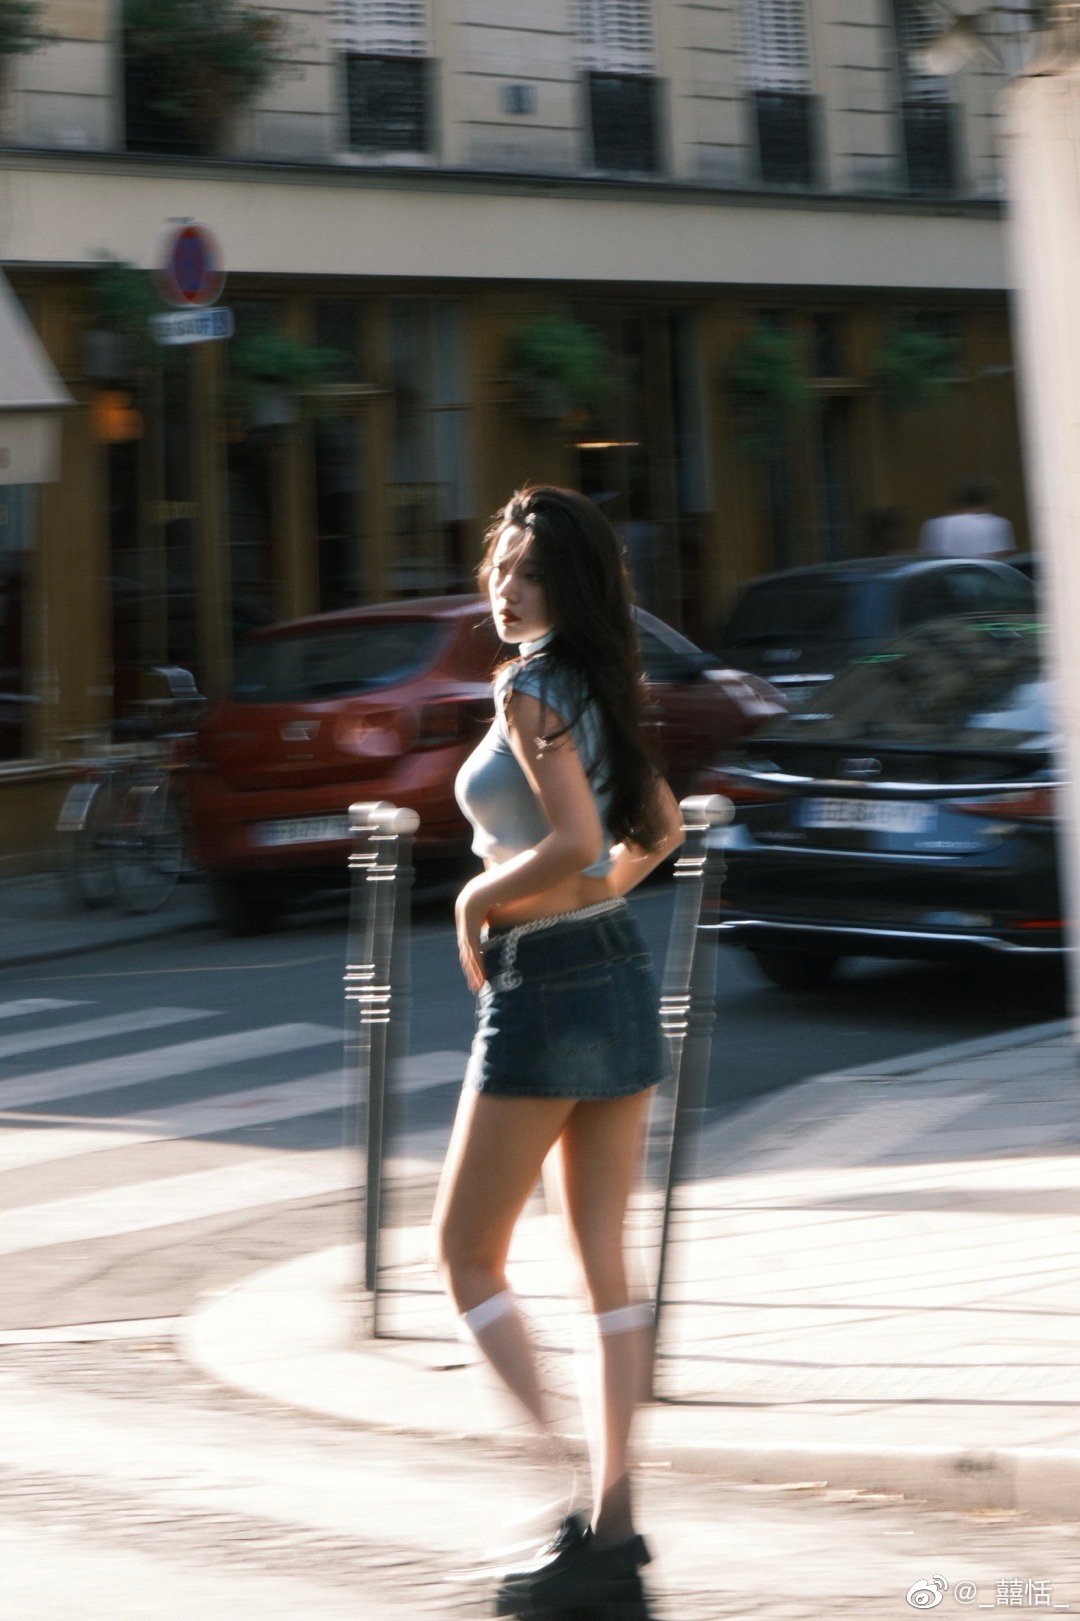 Hot girl Trung Quốc da trắng, môi đỏ, sáng bừng giữa đường phố Paris với đồ cạp trễ - 8